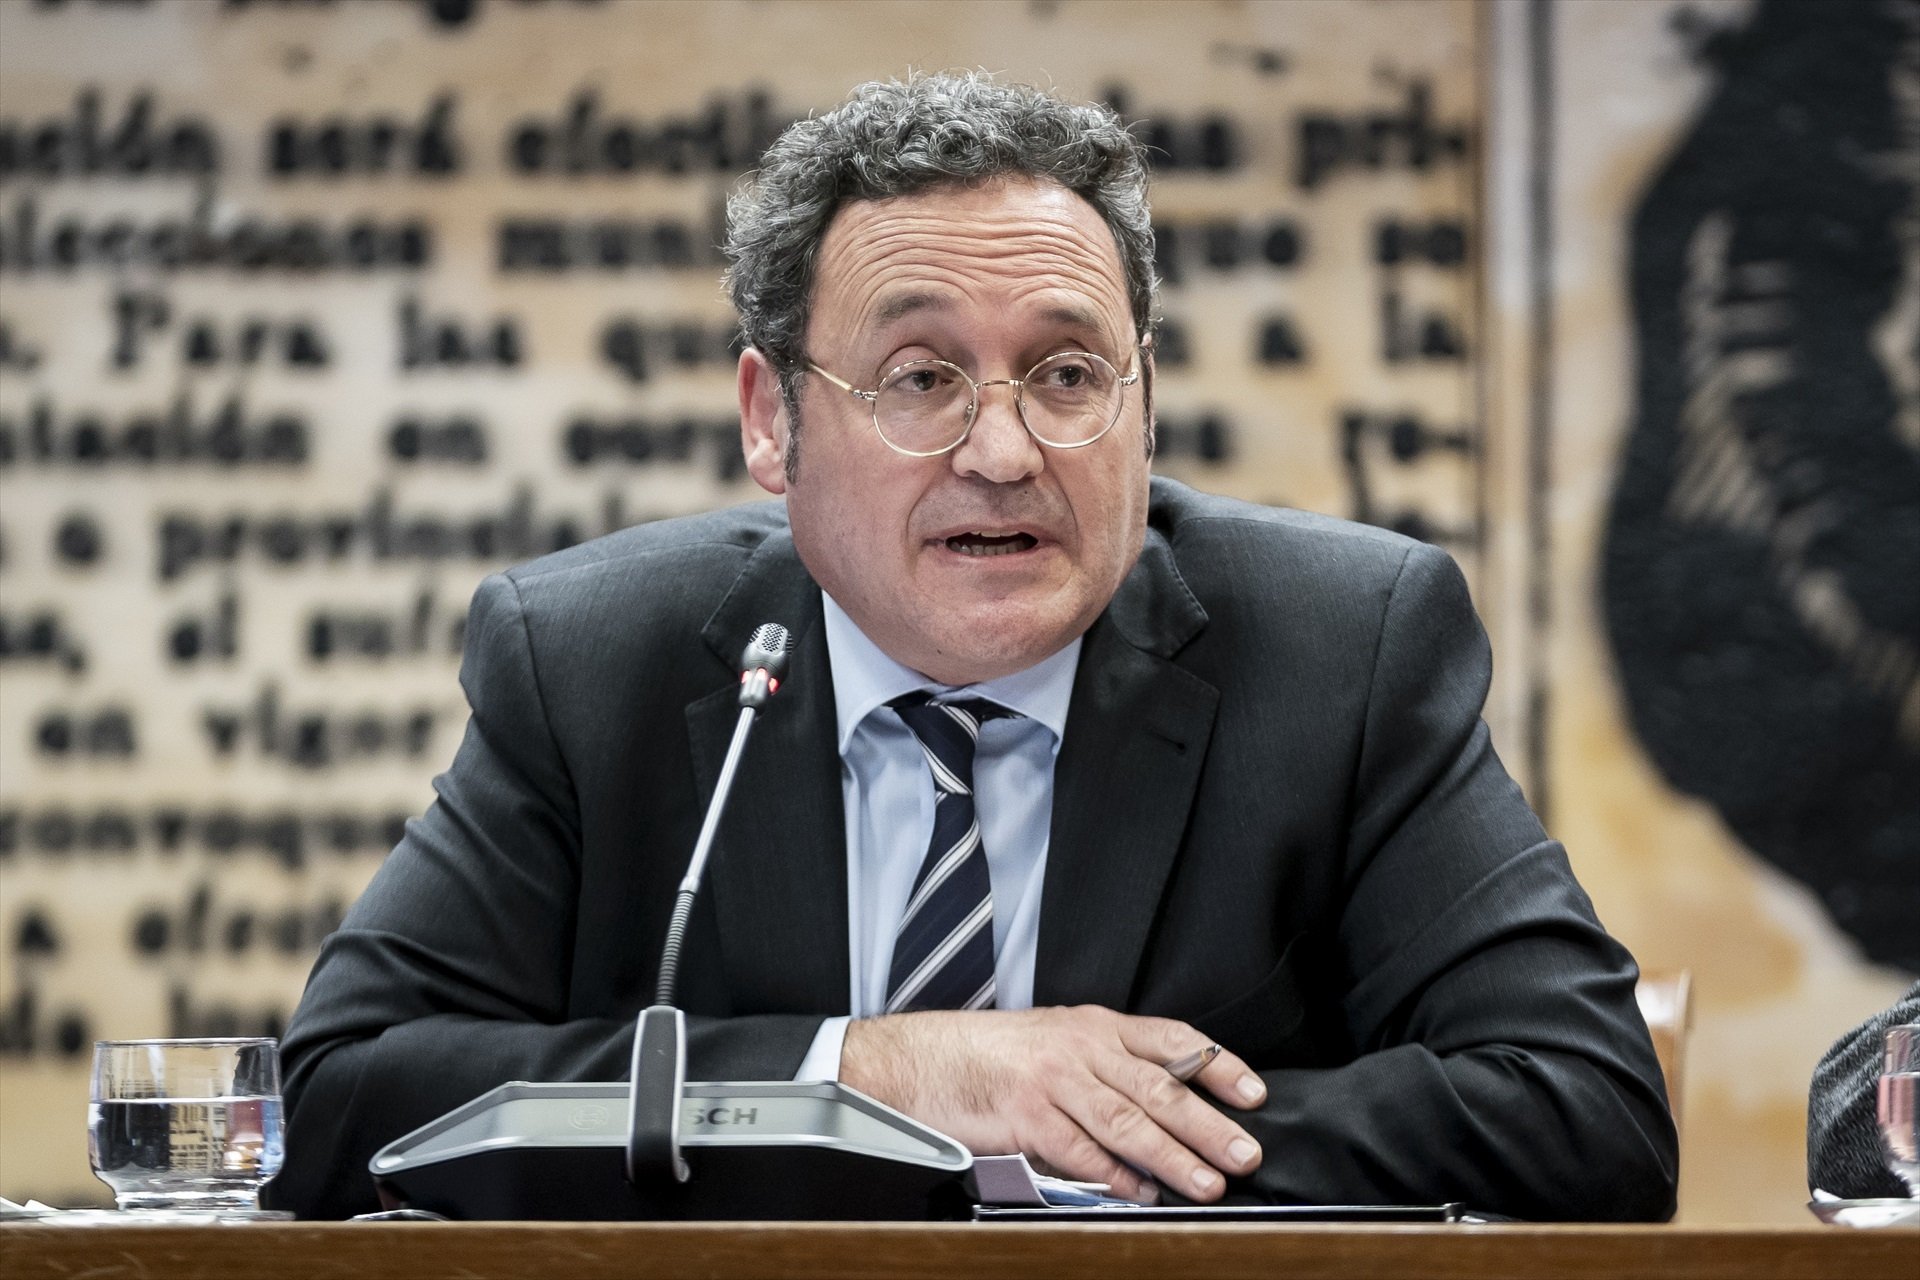 El fiscal general, sobre la operación Catalunya: "Puso en peligro la estructura del Estado de derecho"